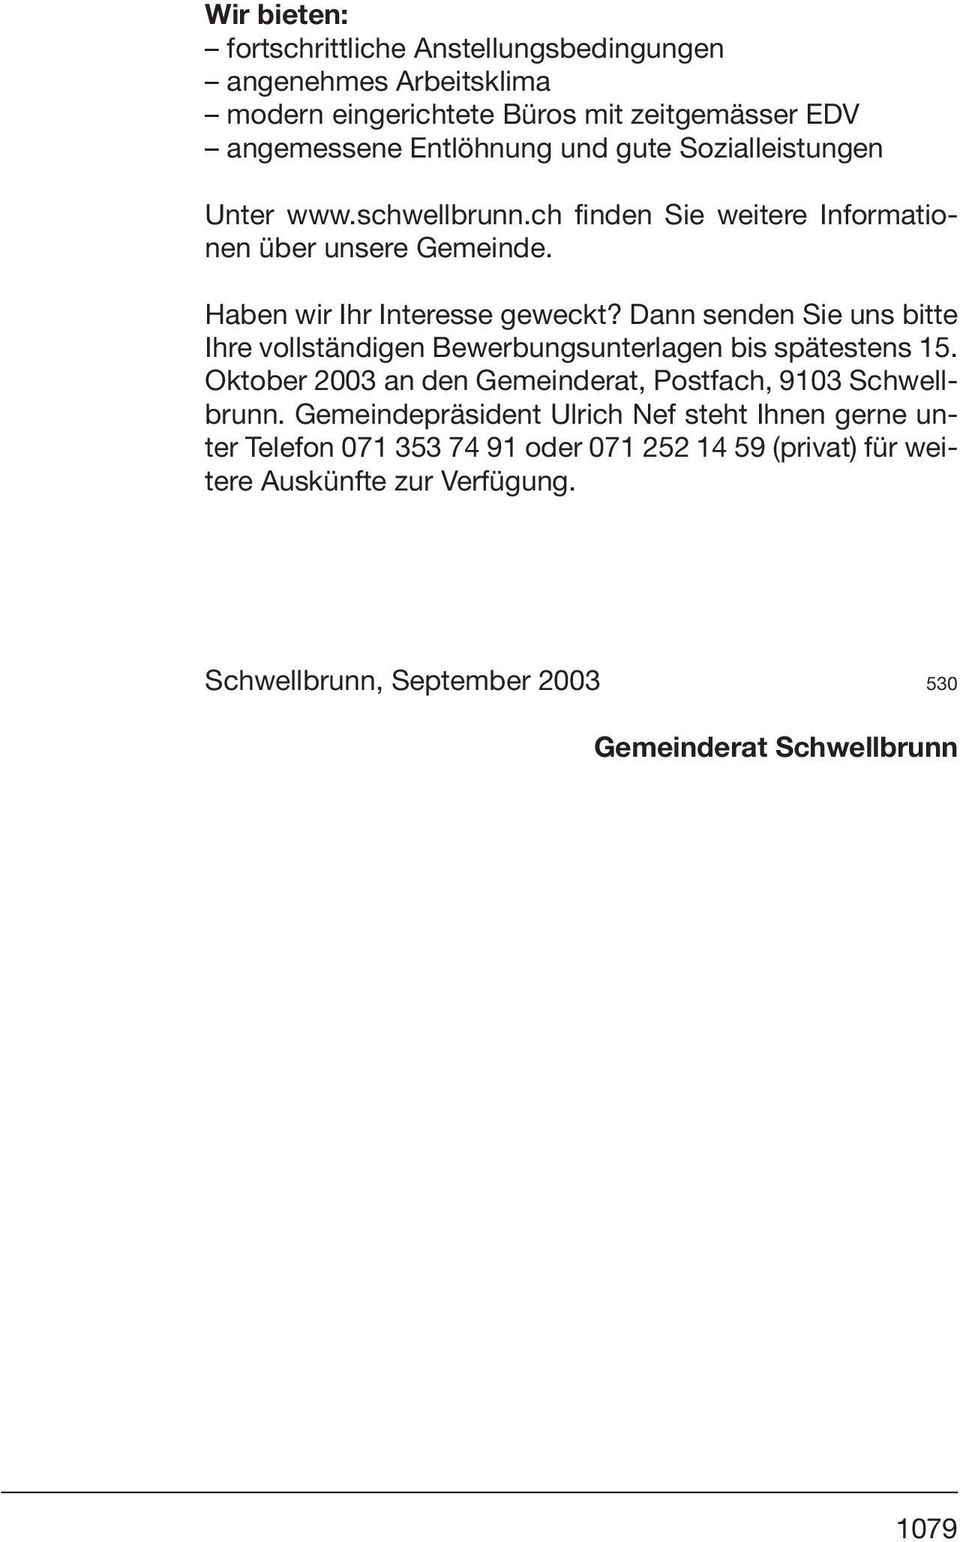 Dann senden Sie uns bitte Ihre vollständigen Bewerbungsunterlagen bis spätestens 15. Oktober 2003 an den Gemeinderat, Postfach, 9103 Schwellbrunn.